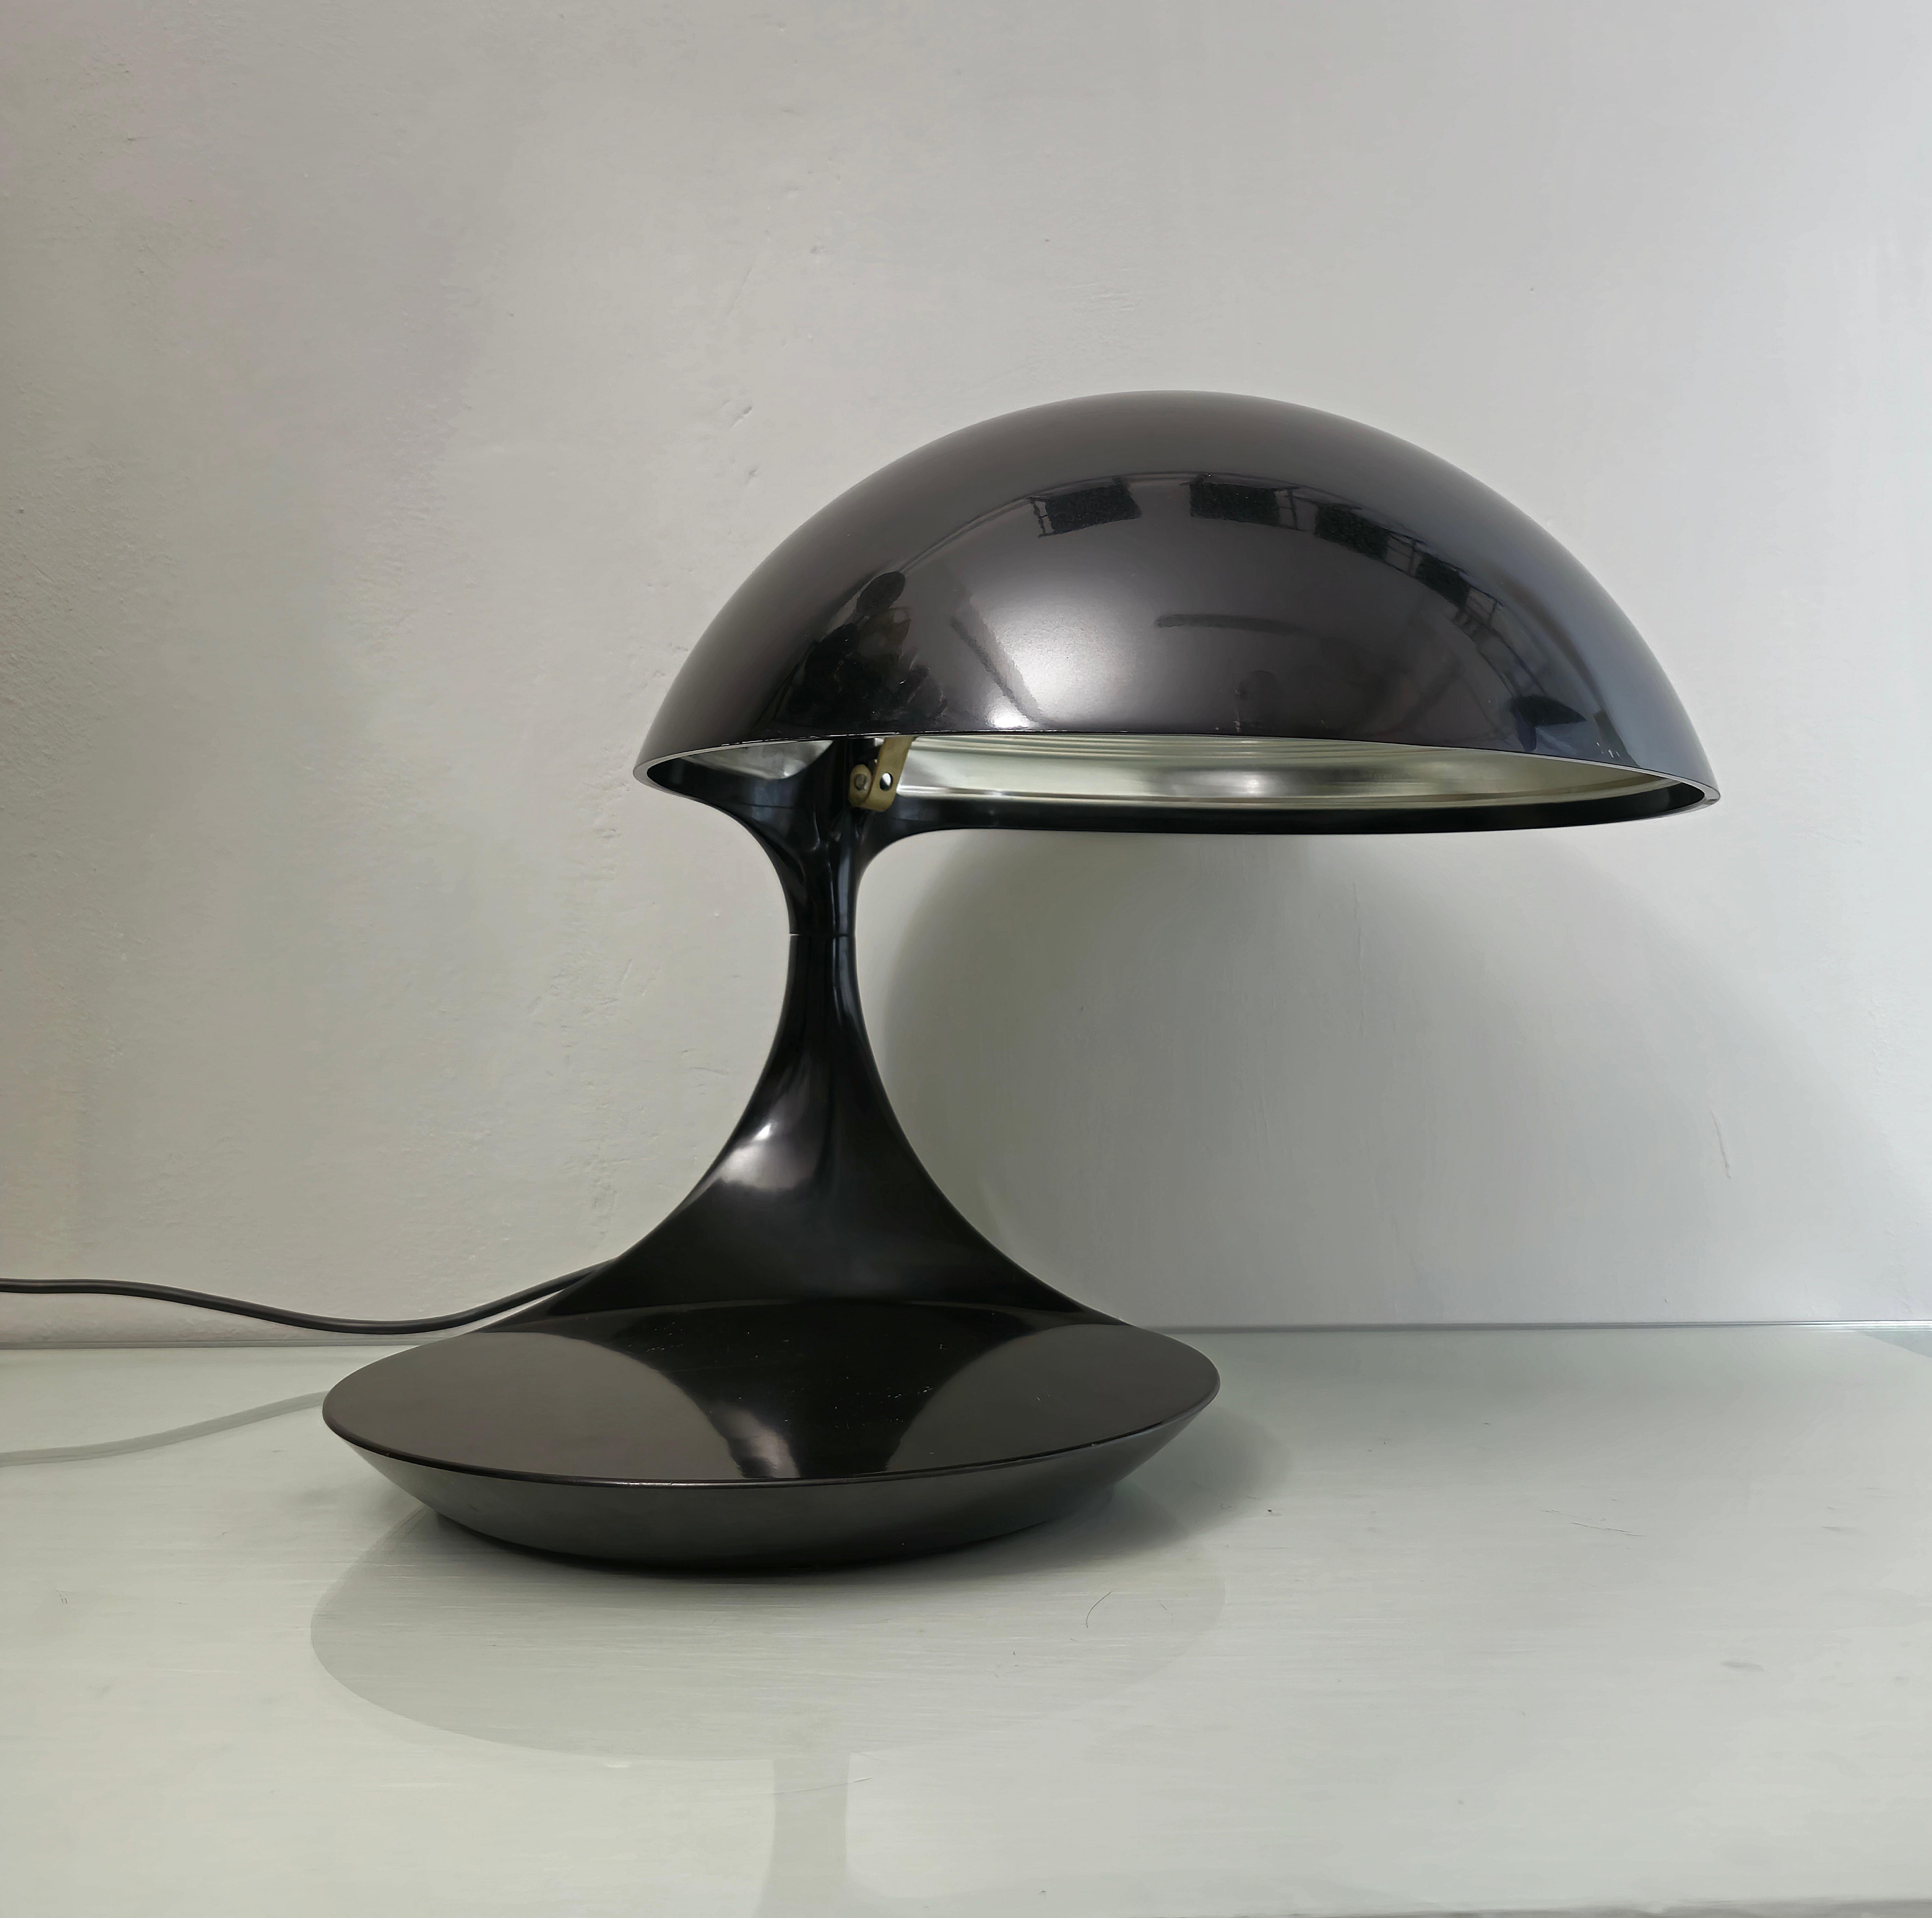 Tisch-Schreibtischlampe Elio Martinelli Mod. Cobra 629 Midcentury Modern Italien 1960er Jahre (Moderne der Mitte des Jahrhunderts)